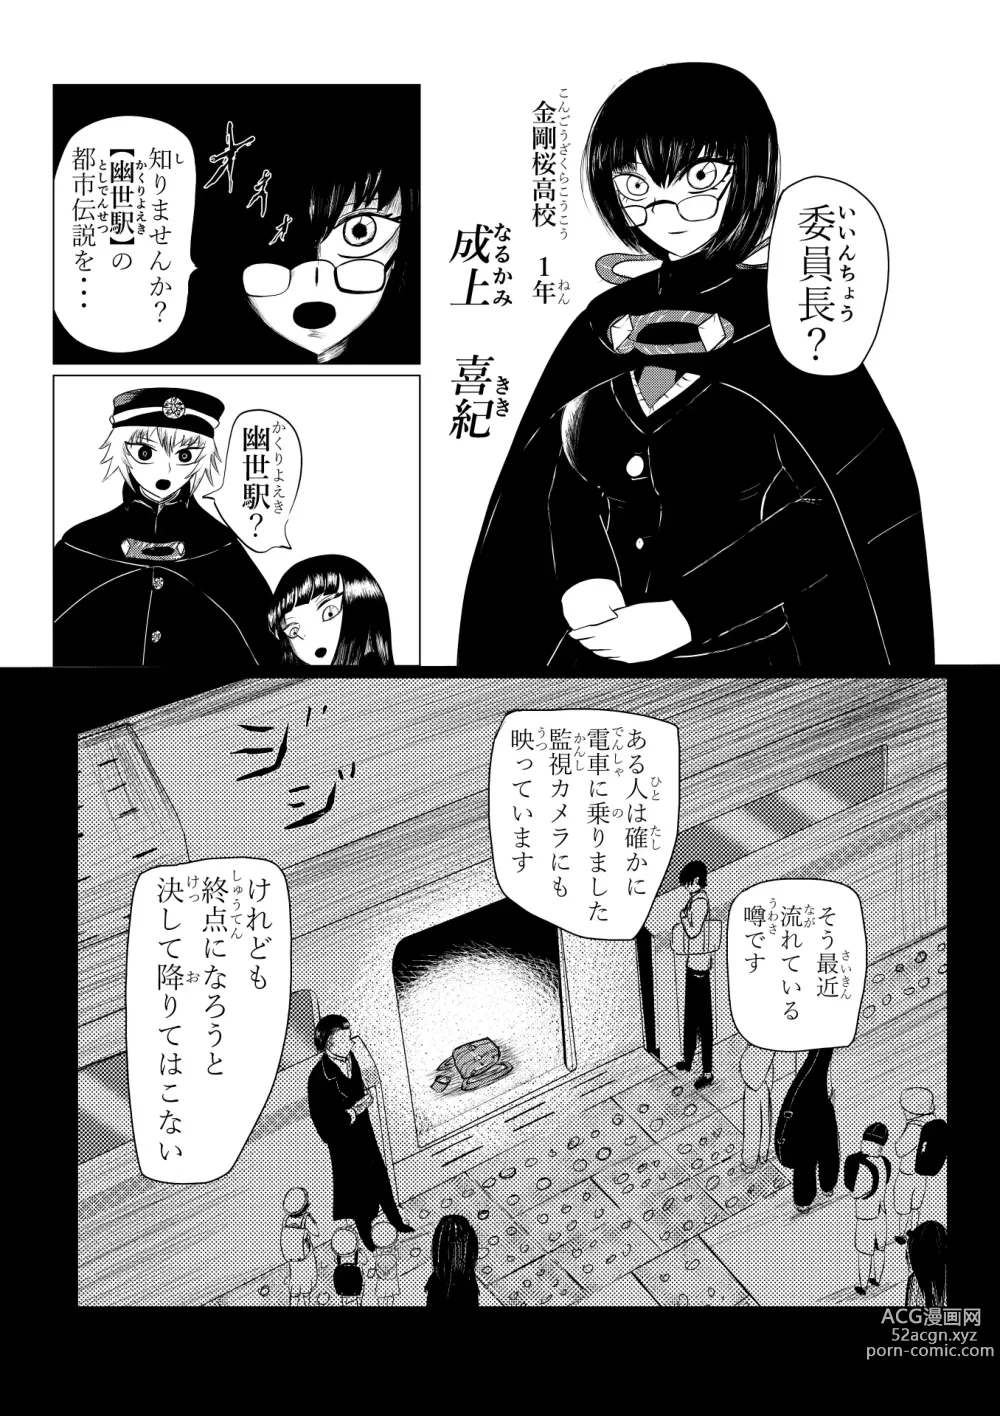 Page 12 of doujinshi HYPE-C Kutourufu Shinwa Musou Roku